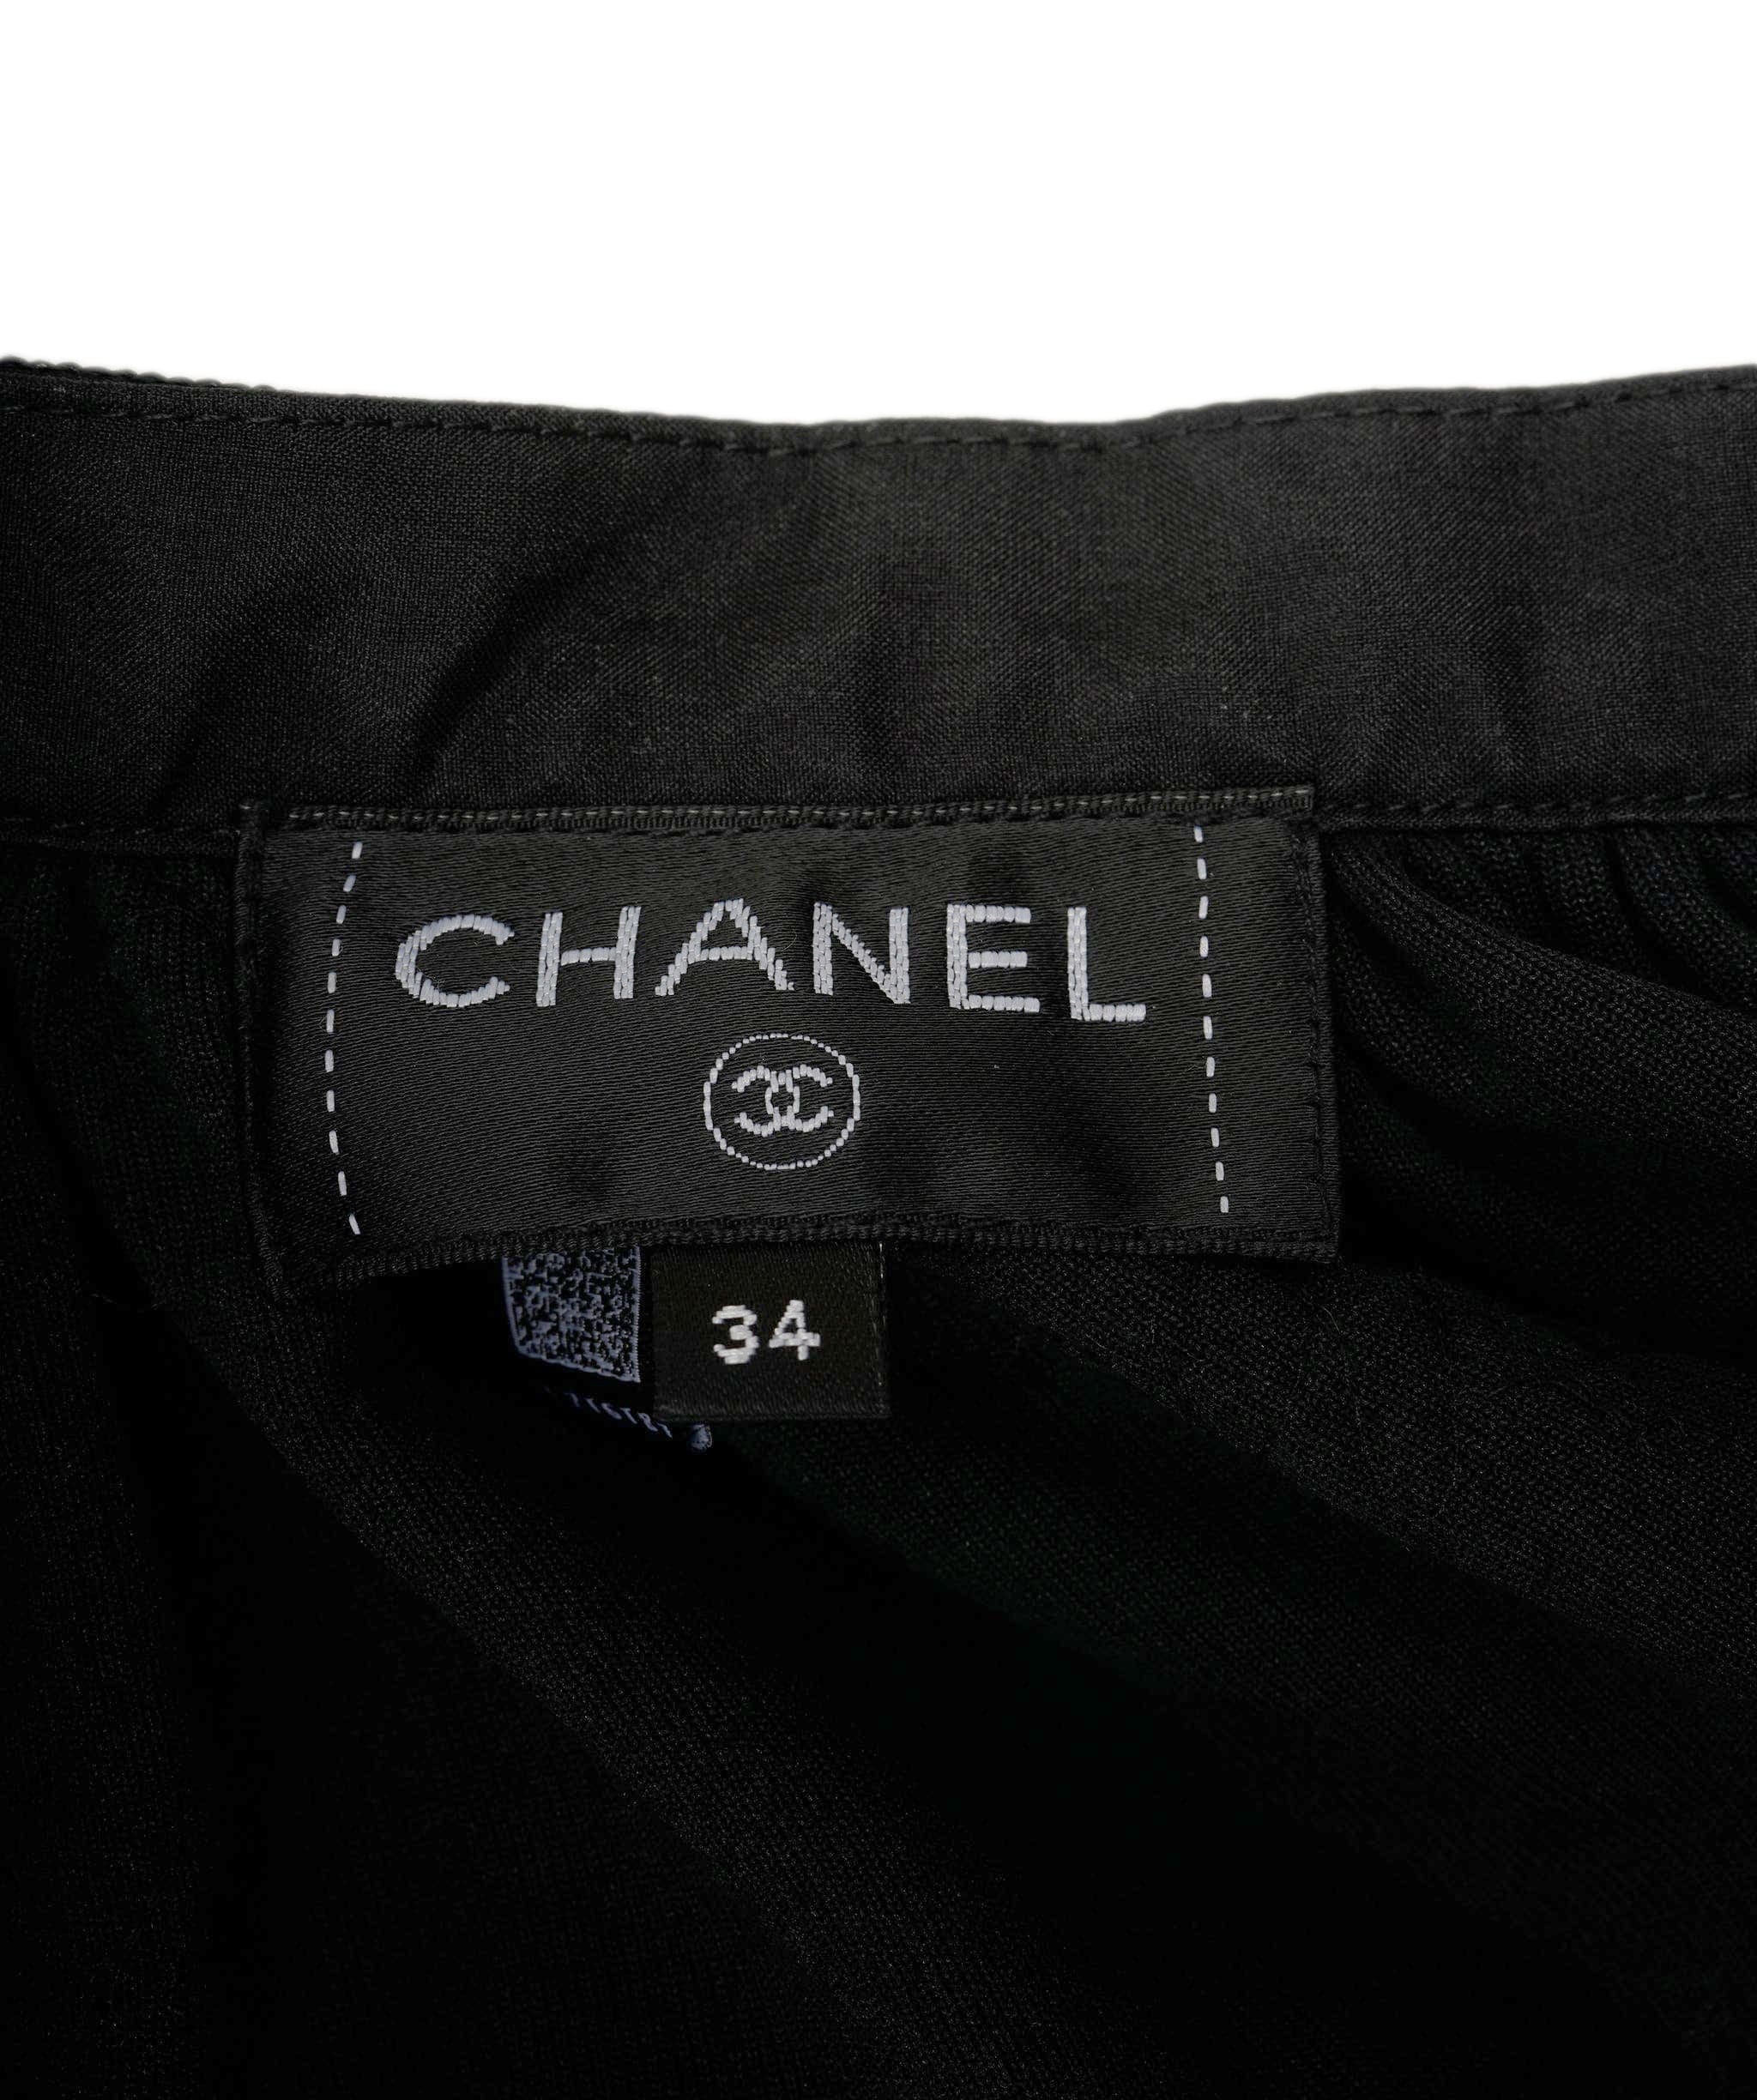 Chanel Chanel Skirt black velvet with sequins FR34 P73382V64928 AVC1128